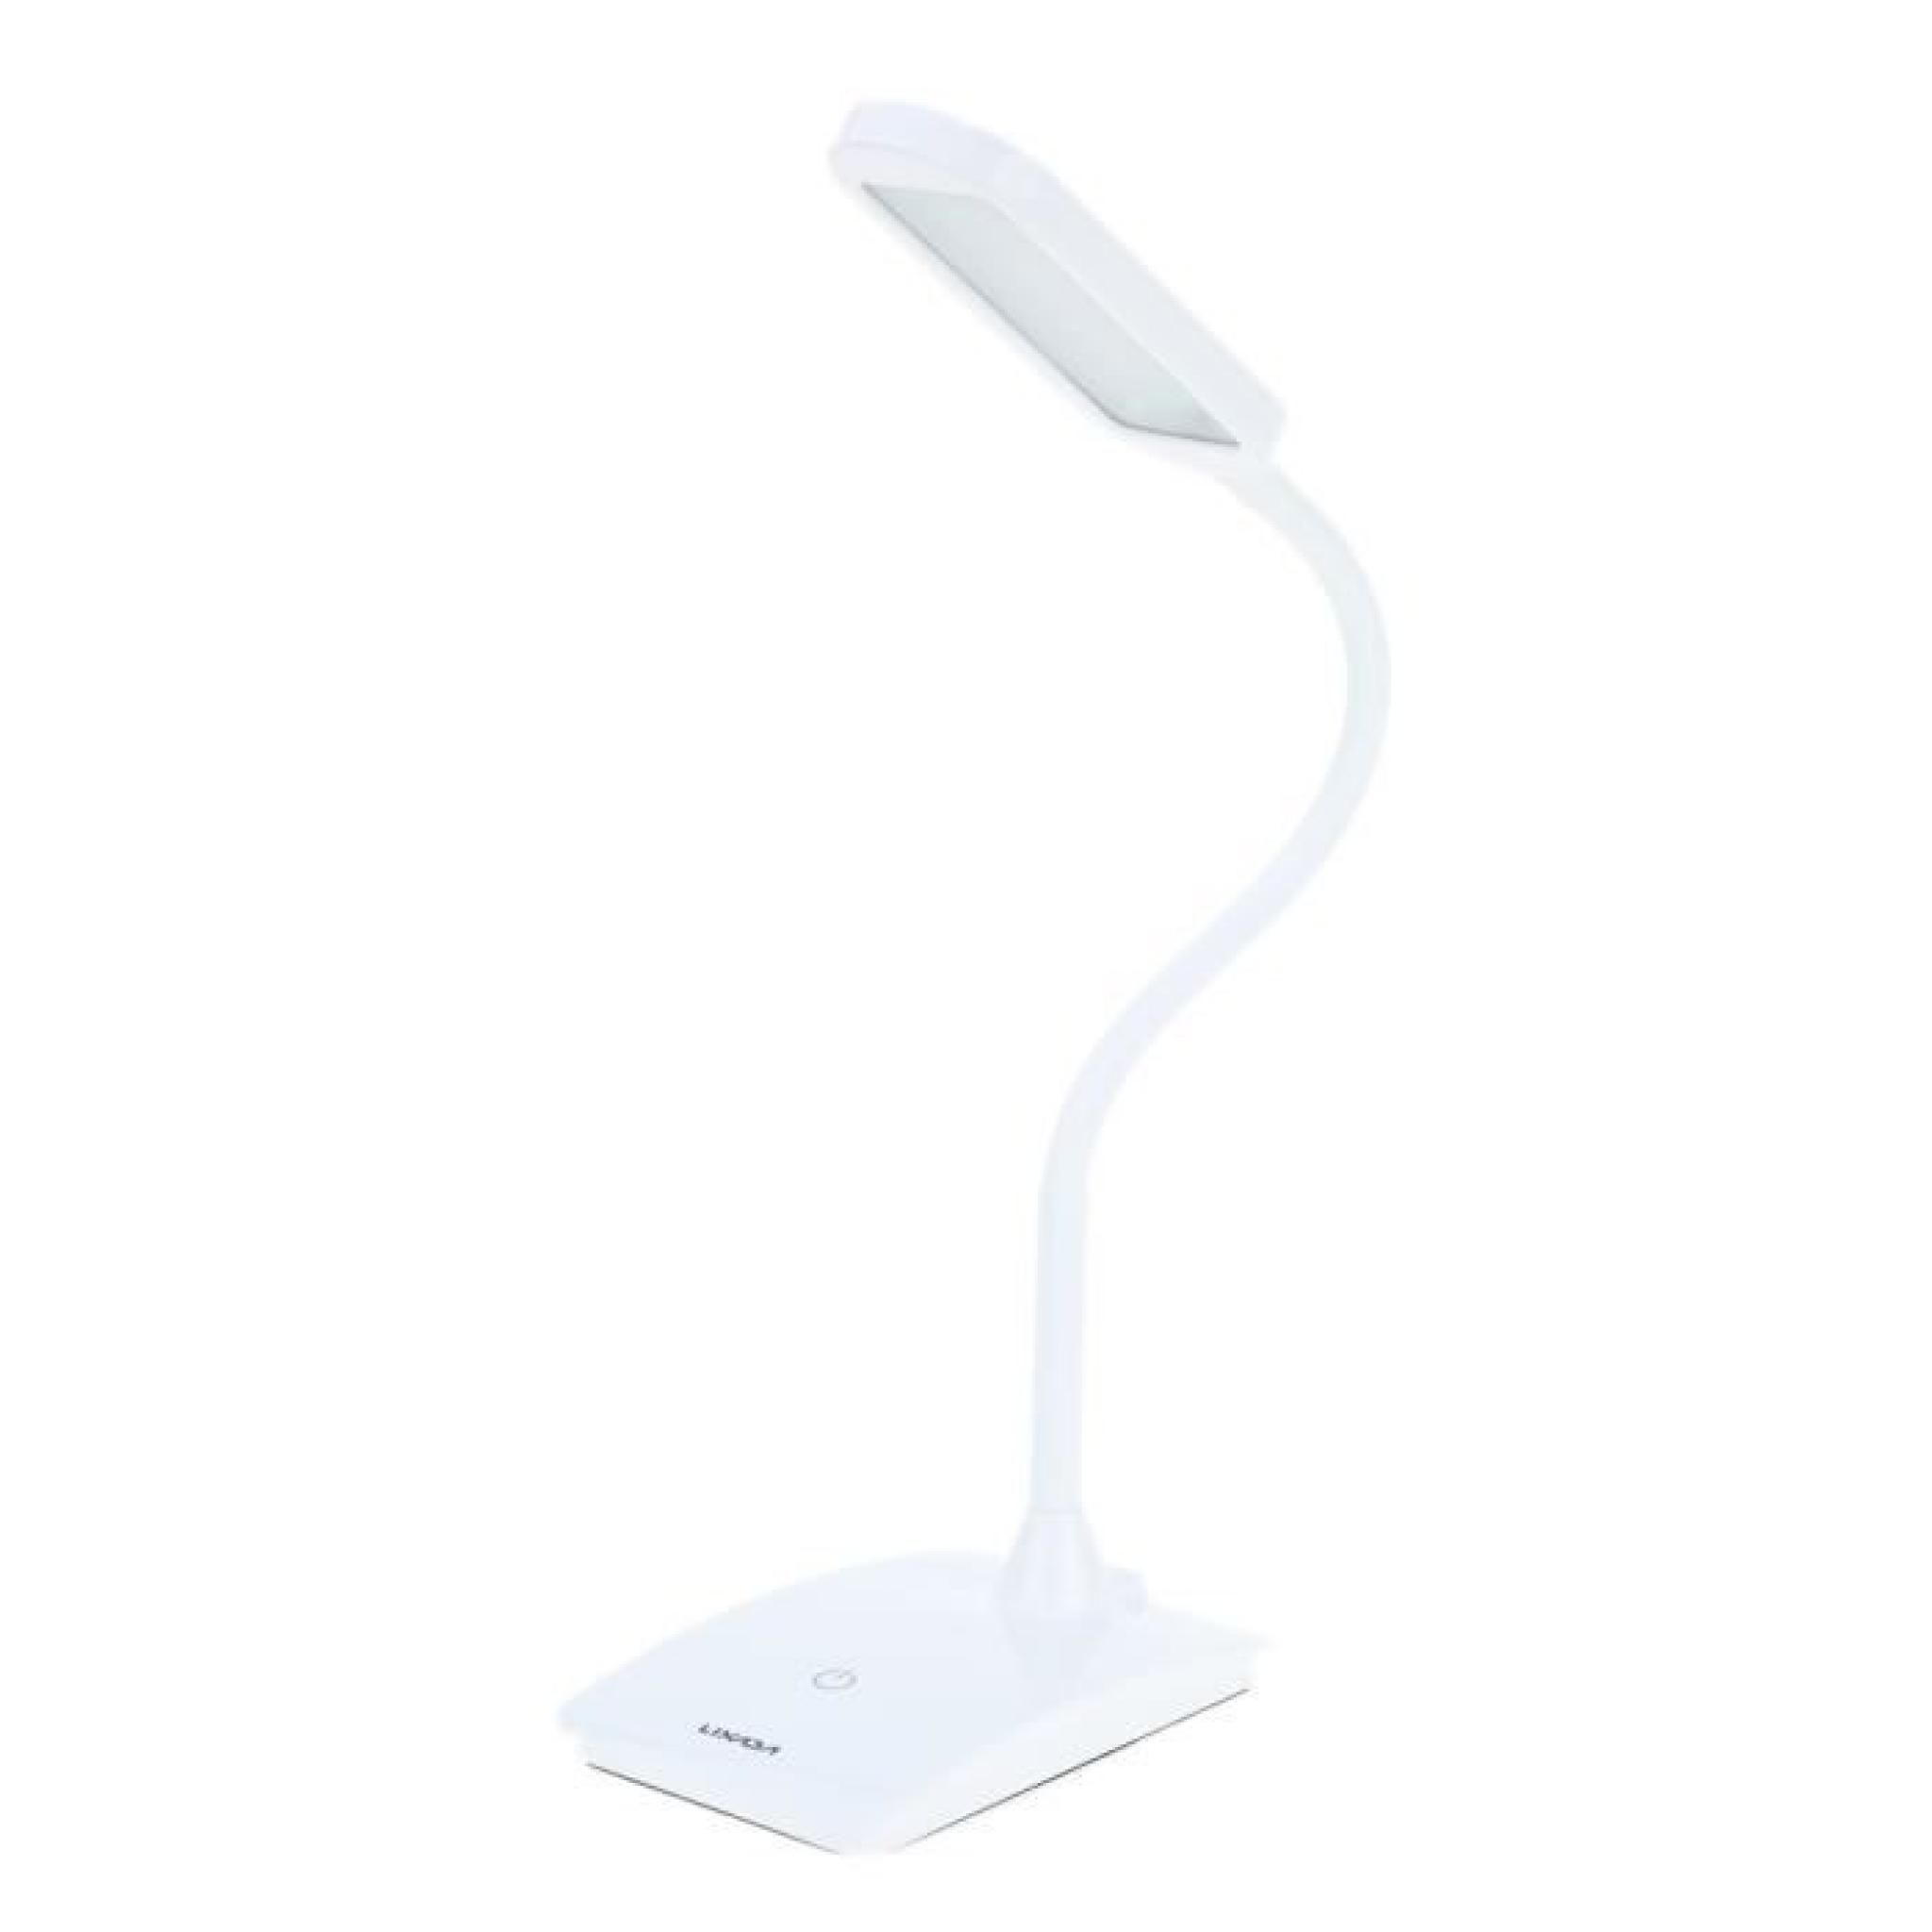  Lixada 6W rechargeable Commutateur tactile Lampe LED de lecture Protéger l'oeil luminosité réglable lampe de table pliable flexible